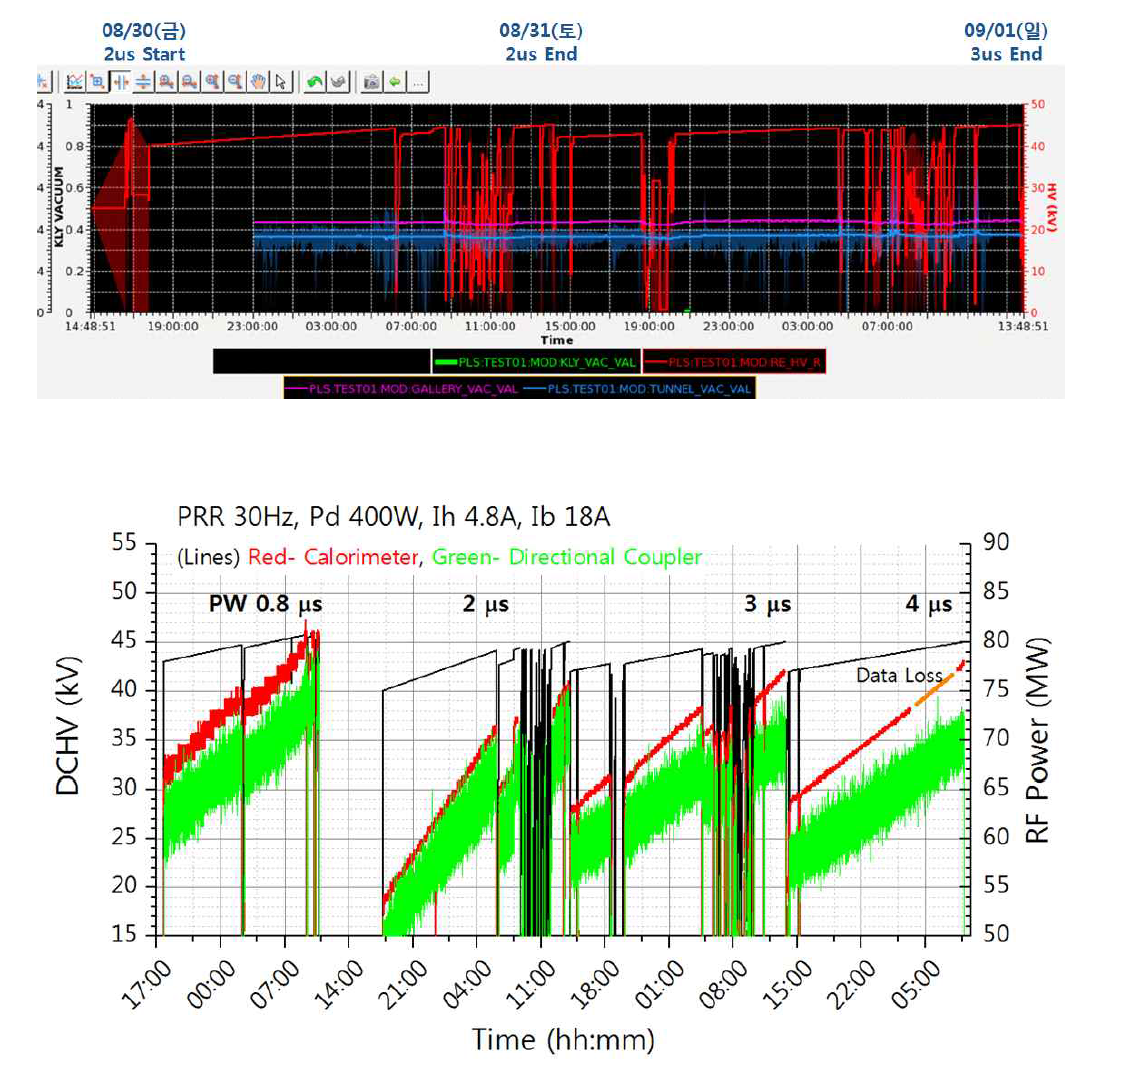 PRR 30 Hz, PW 0.8, 2, 3, 4 μs 시험 결과 : (위) DCHV와 클라이스트론 내부, 갤러리, 터널 진공도 변화 (아래) Processing이 진행된 시간별 출력 결과로 빨간선은 열량계, 연두색은 방향성 결합기로 측정된 값임